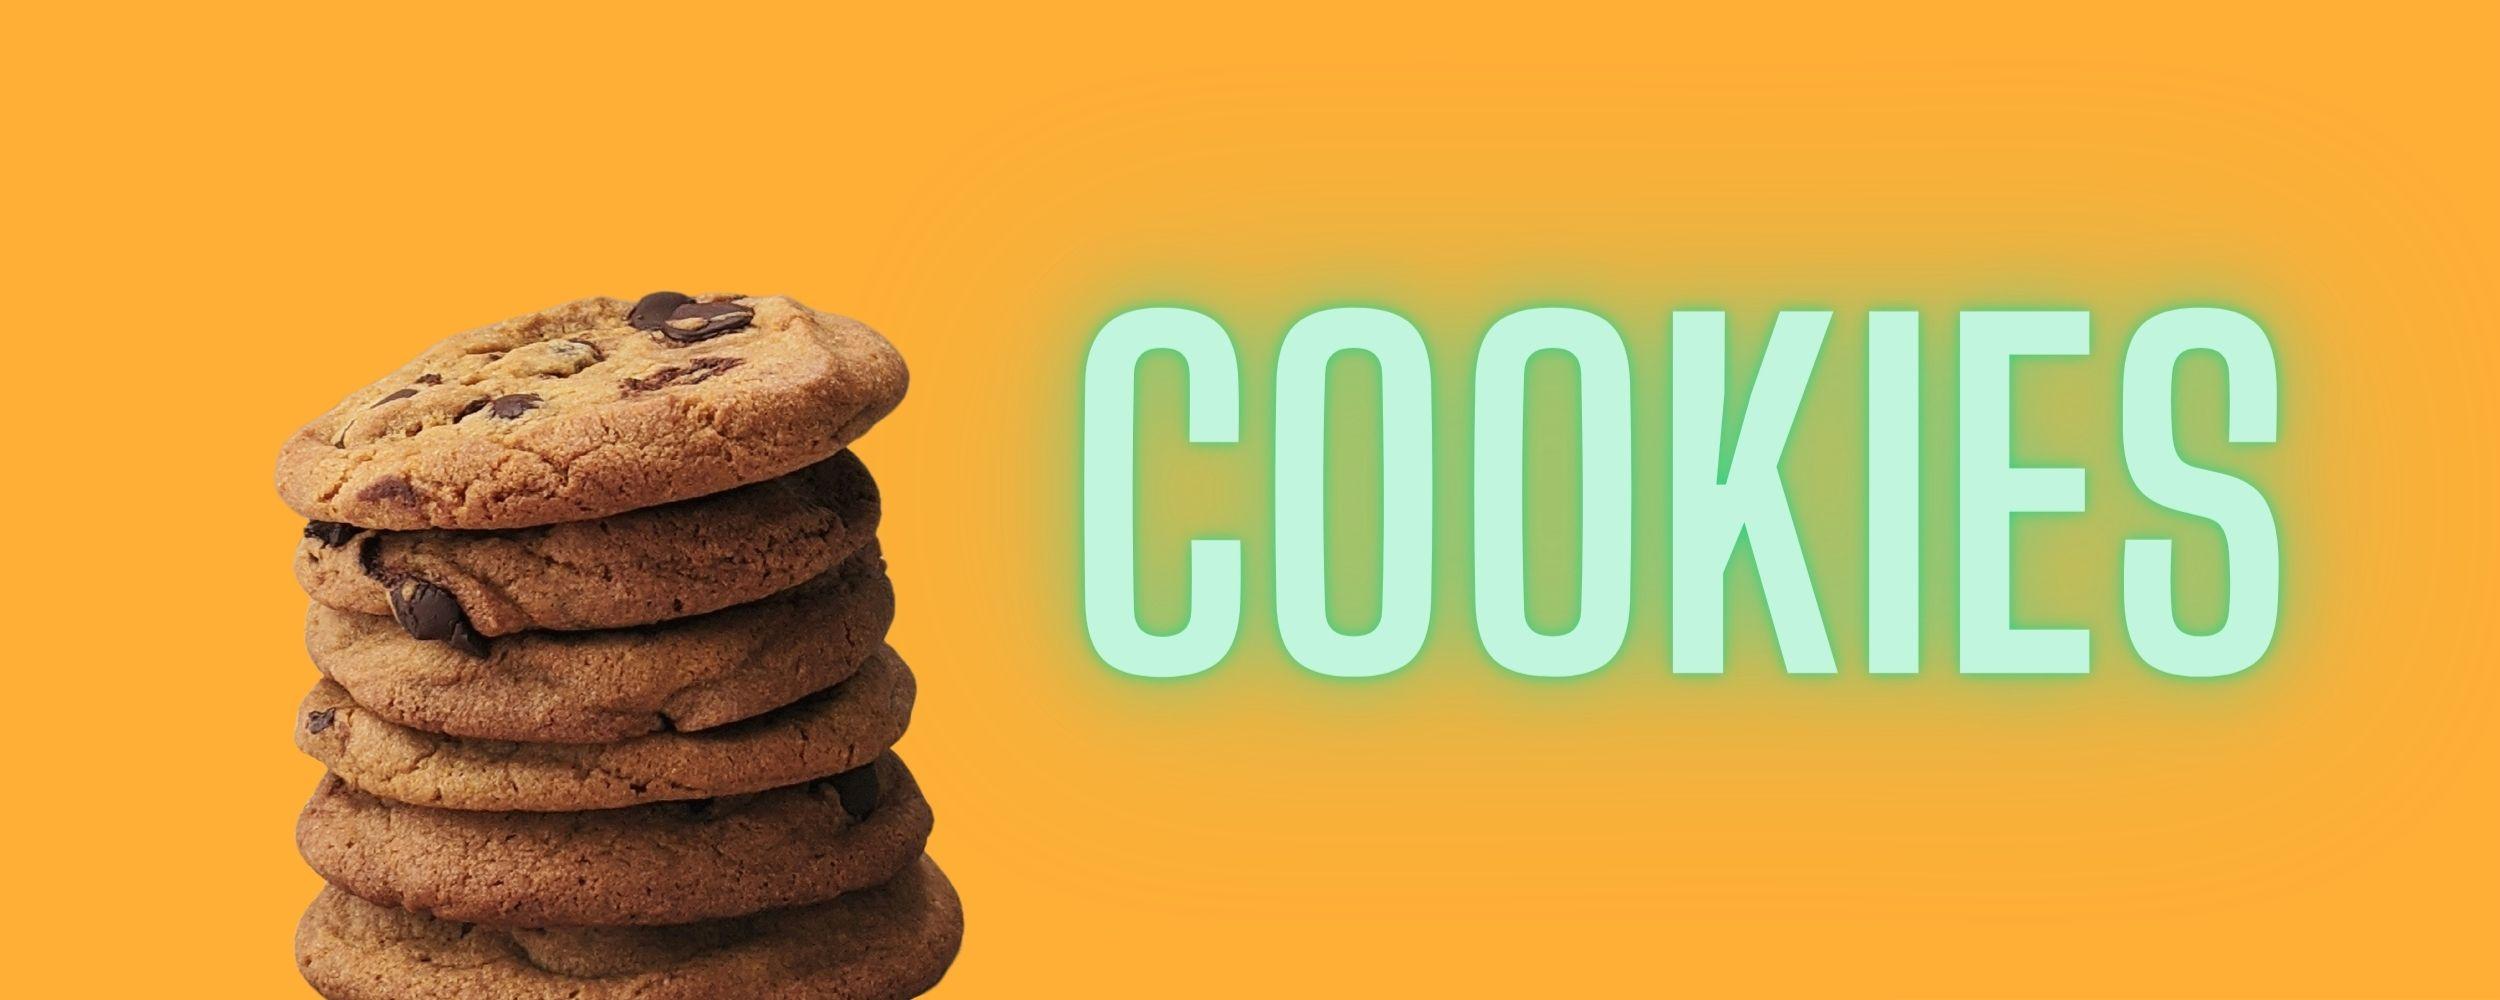 Vad är cookies och varför använder man cookies?